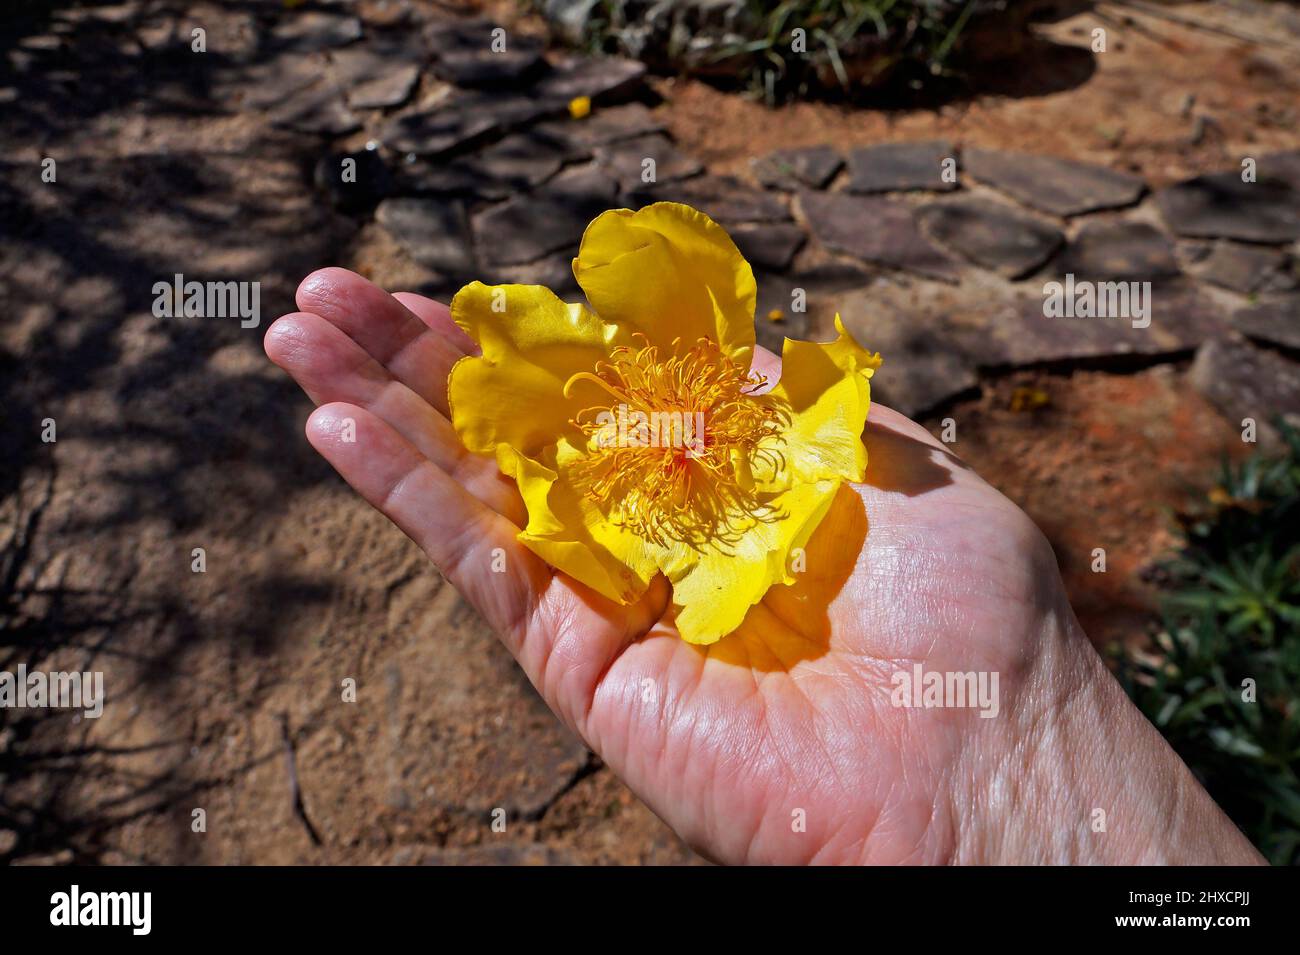 Yellow flower on hand (Cochlospermum vitifolium) Stock Photo